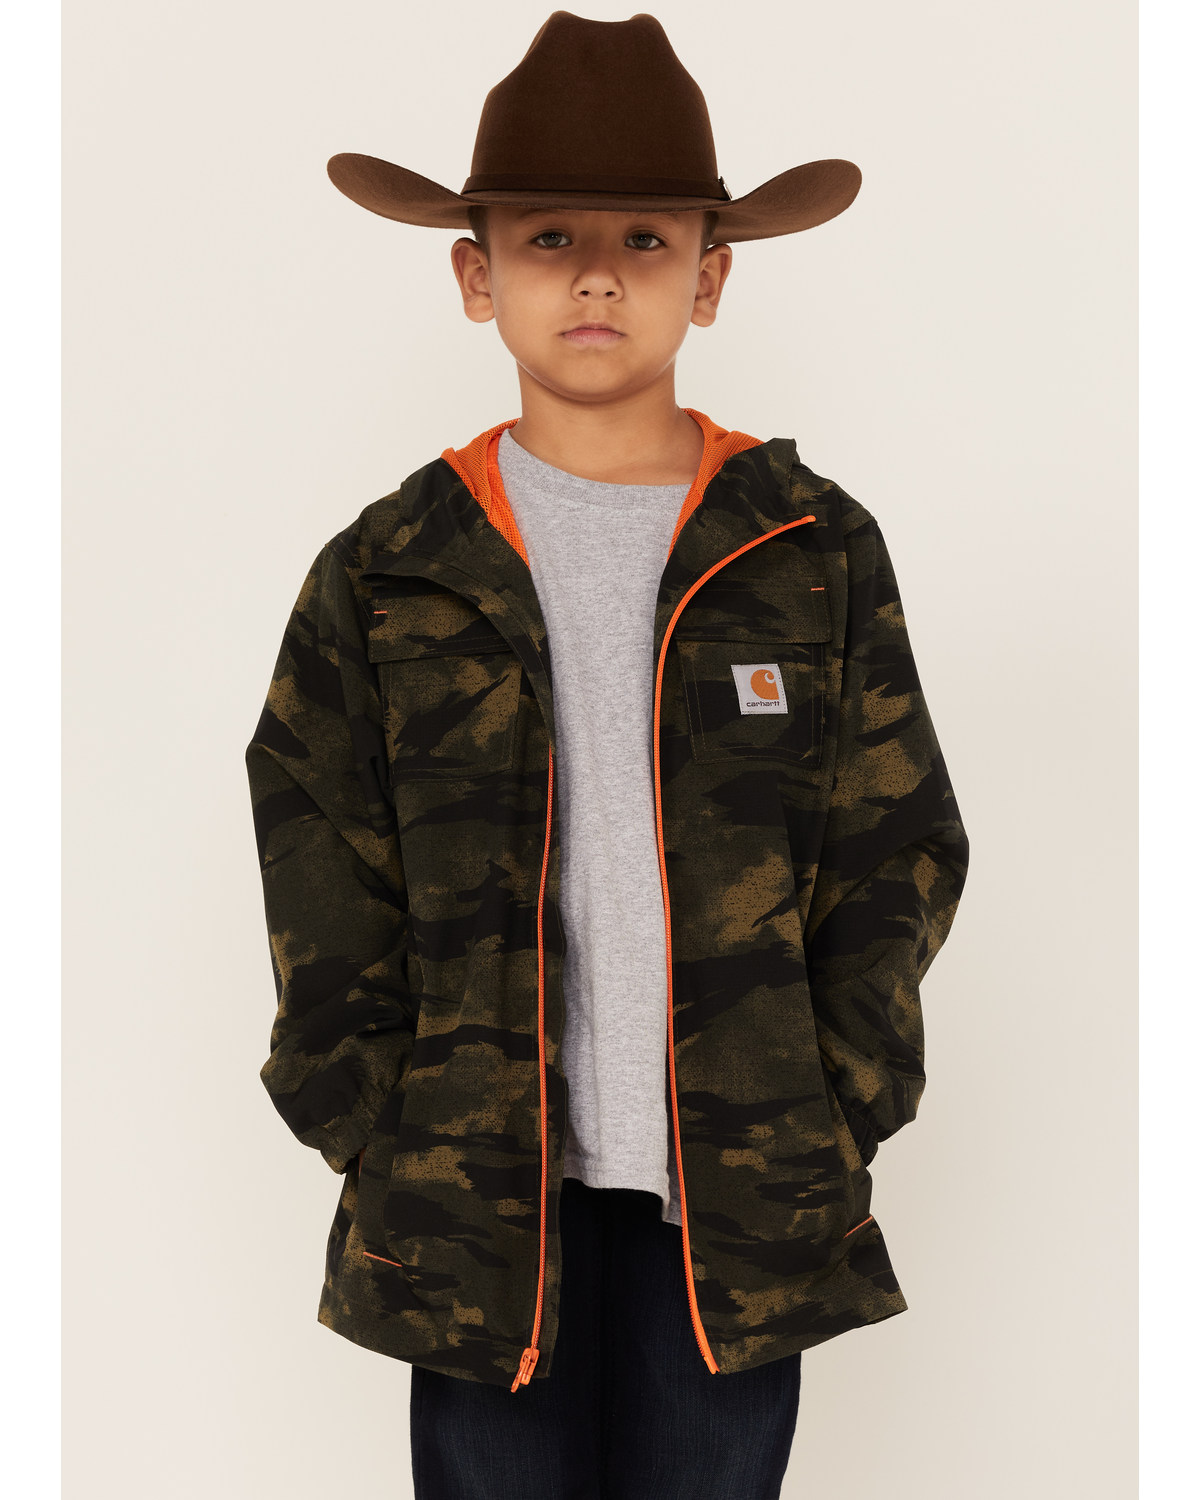 Carhartt Boys' Camo Ripstop Hooded Jacket